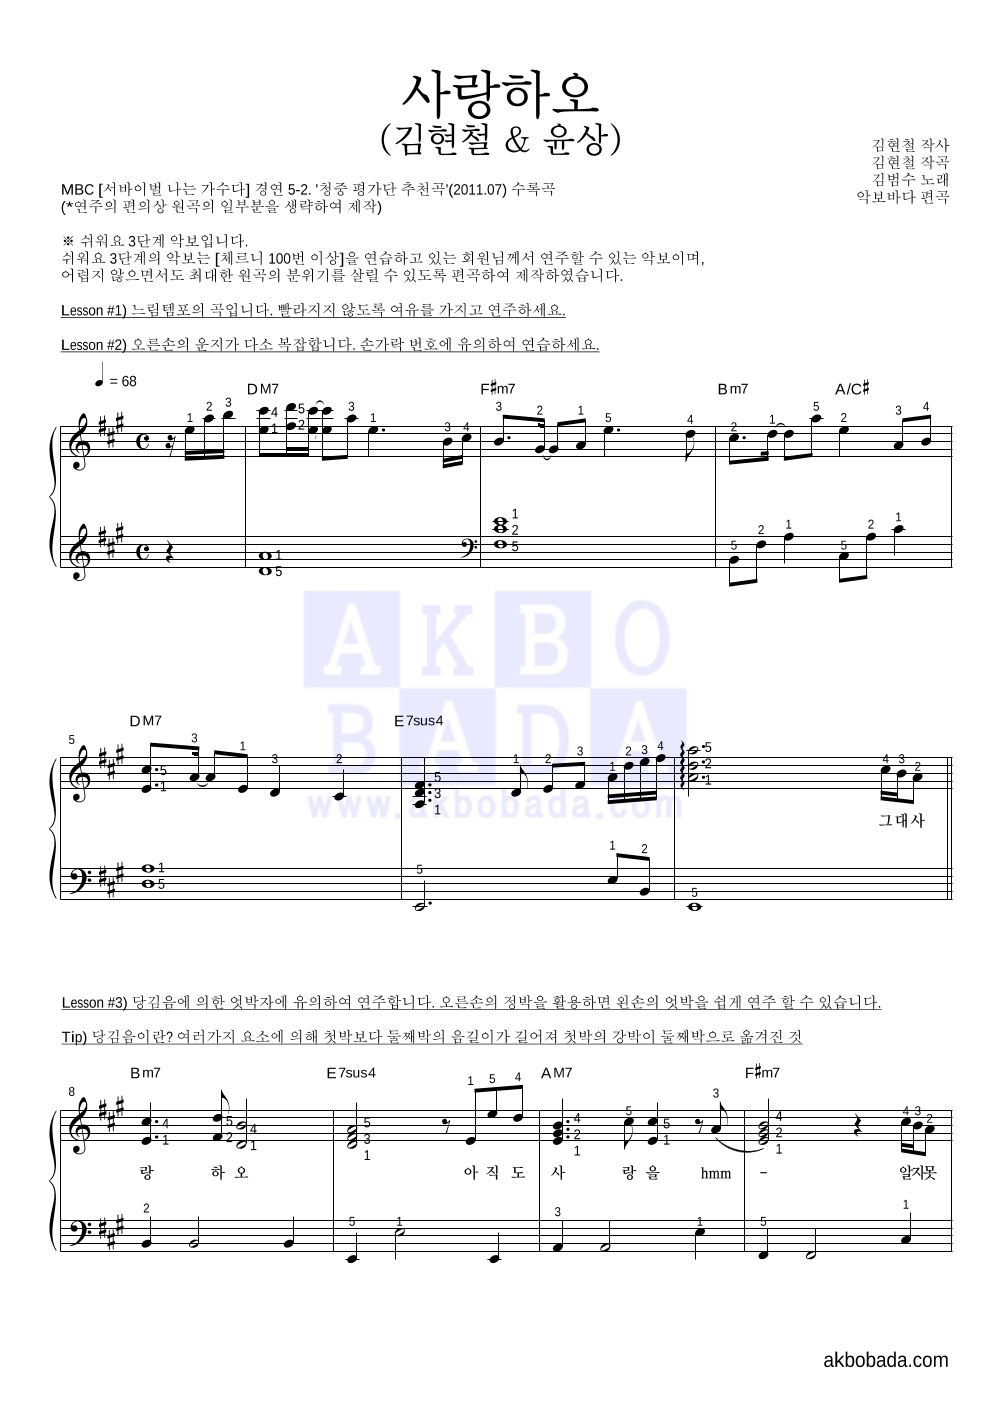 김범수 - 사랑하오 (김현철 & 윤상) 피아노2단-쉬워요 악보 